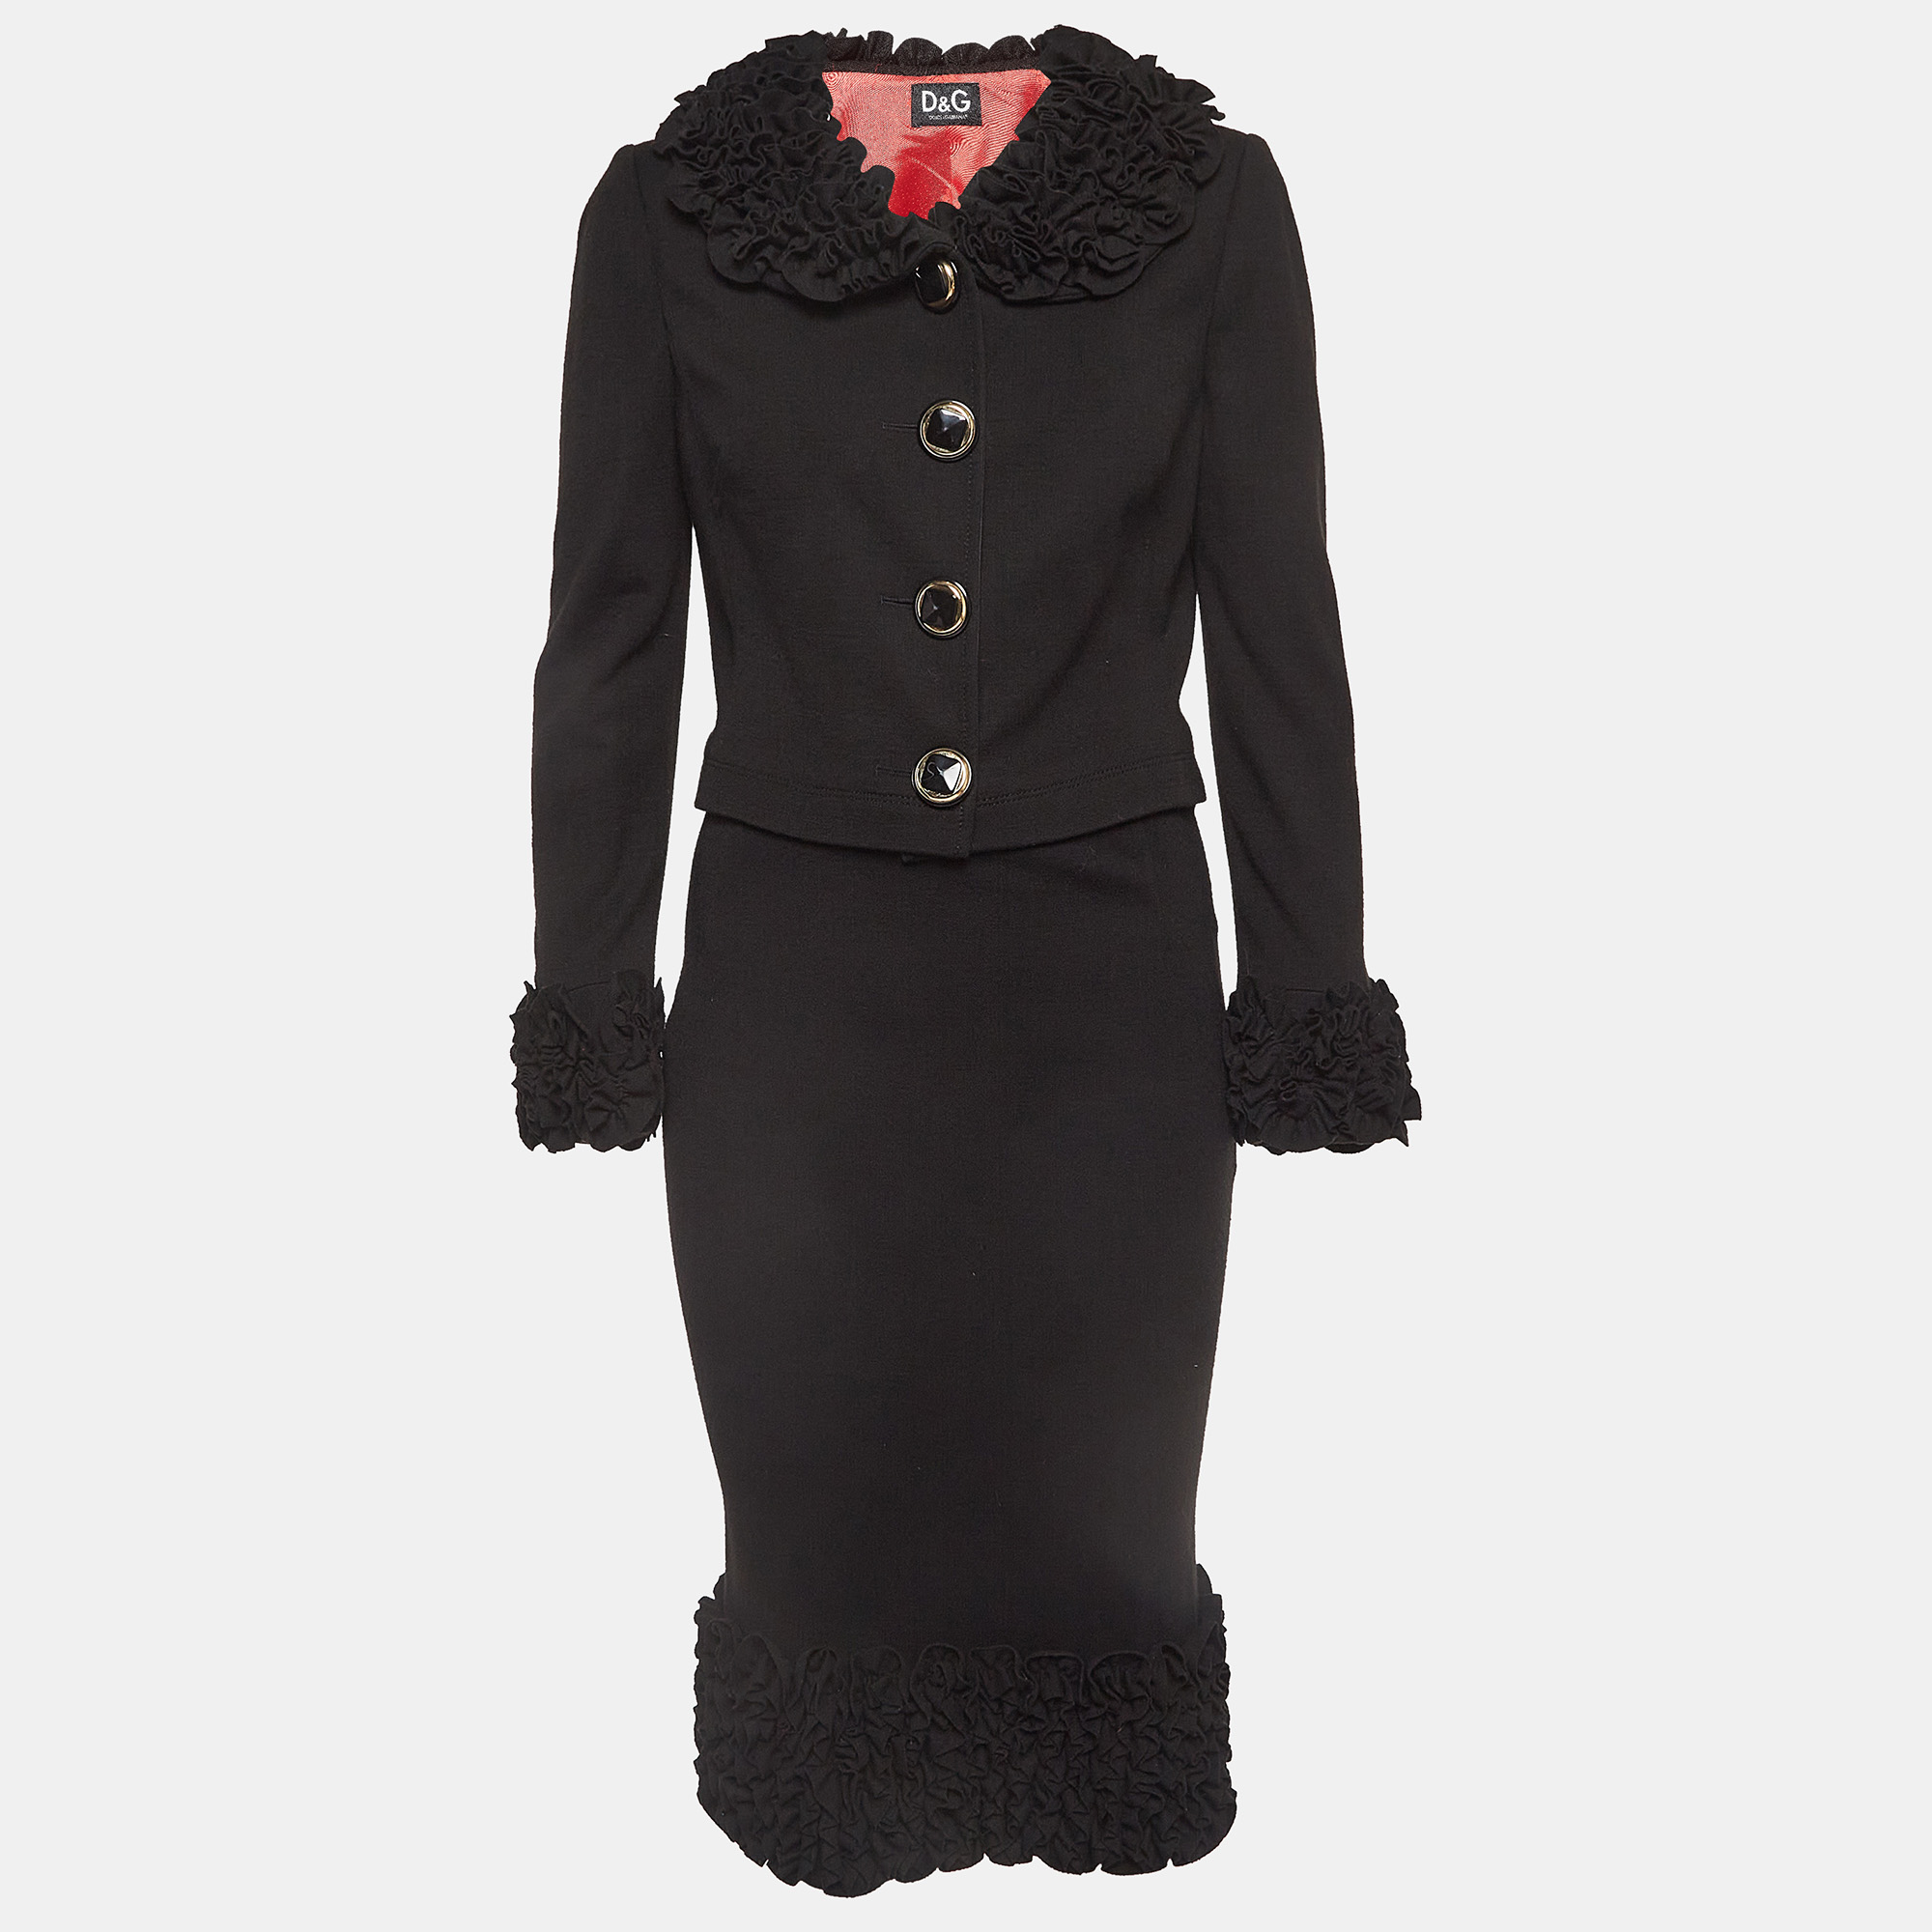 D&g vintage black wool ruffled skirt top set m